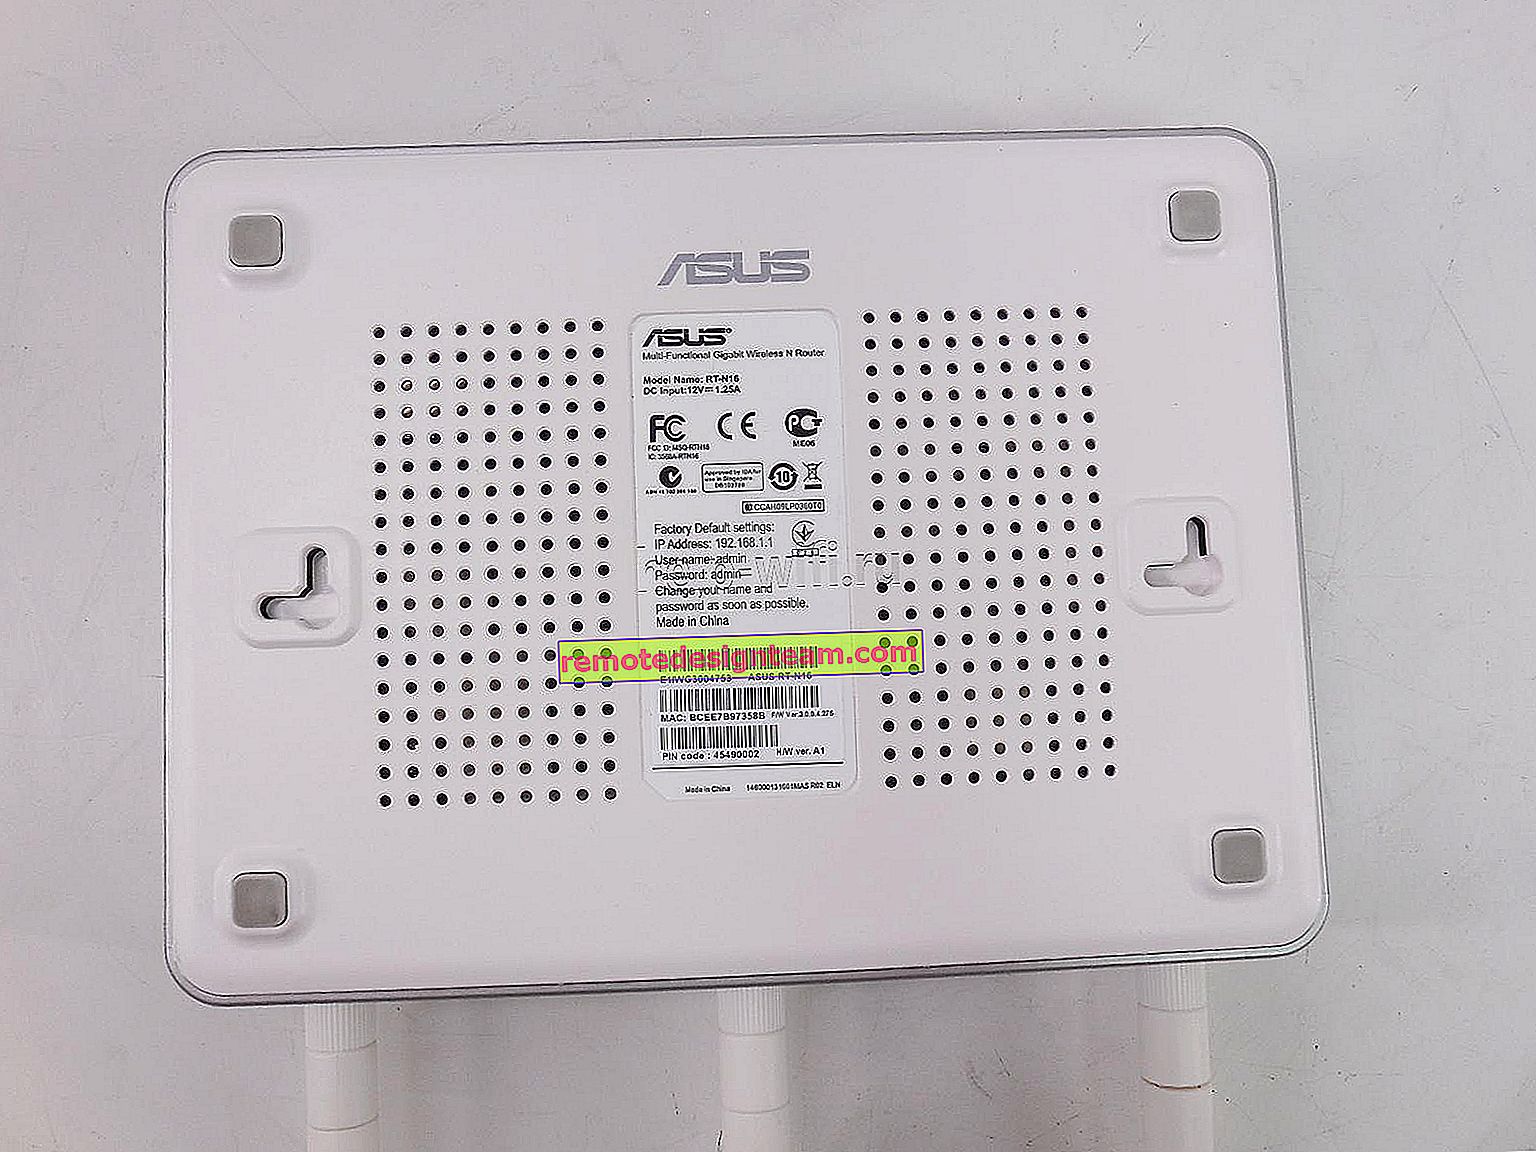 Inserimento delle impostazioni sui router Asus (192.168.1.1)